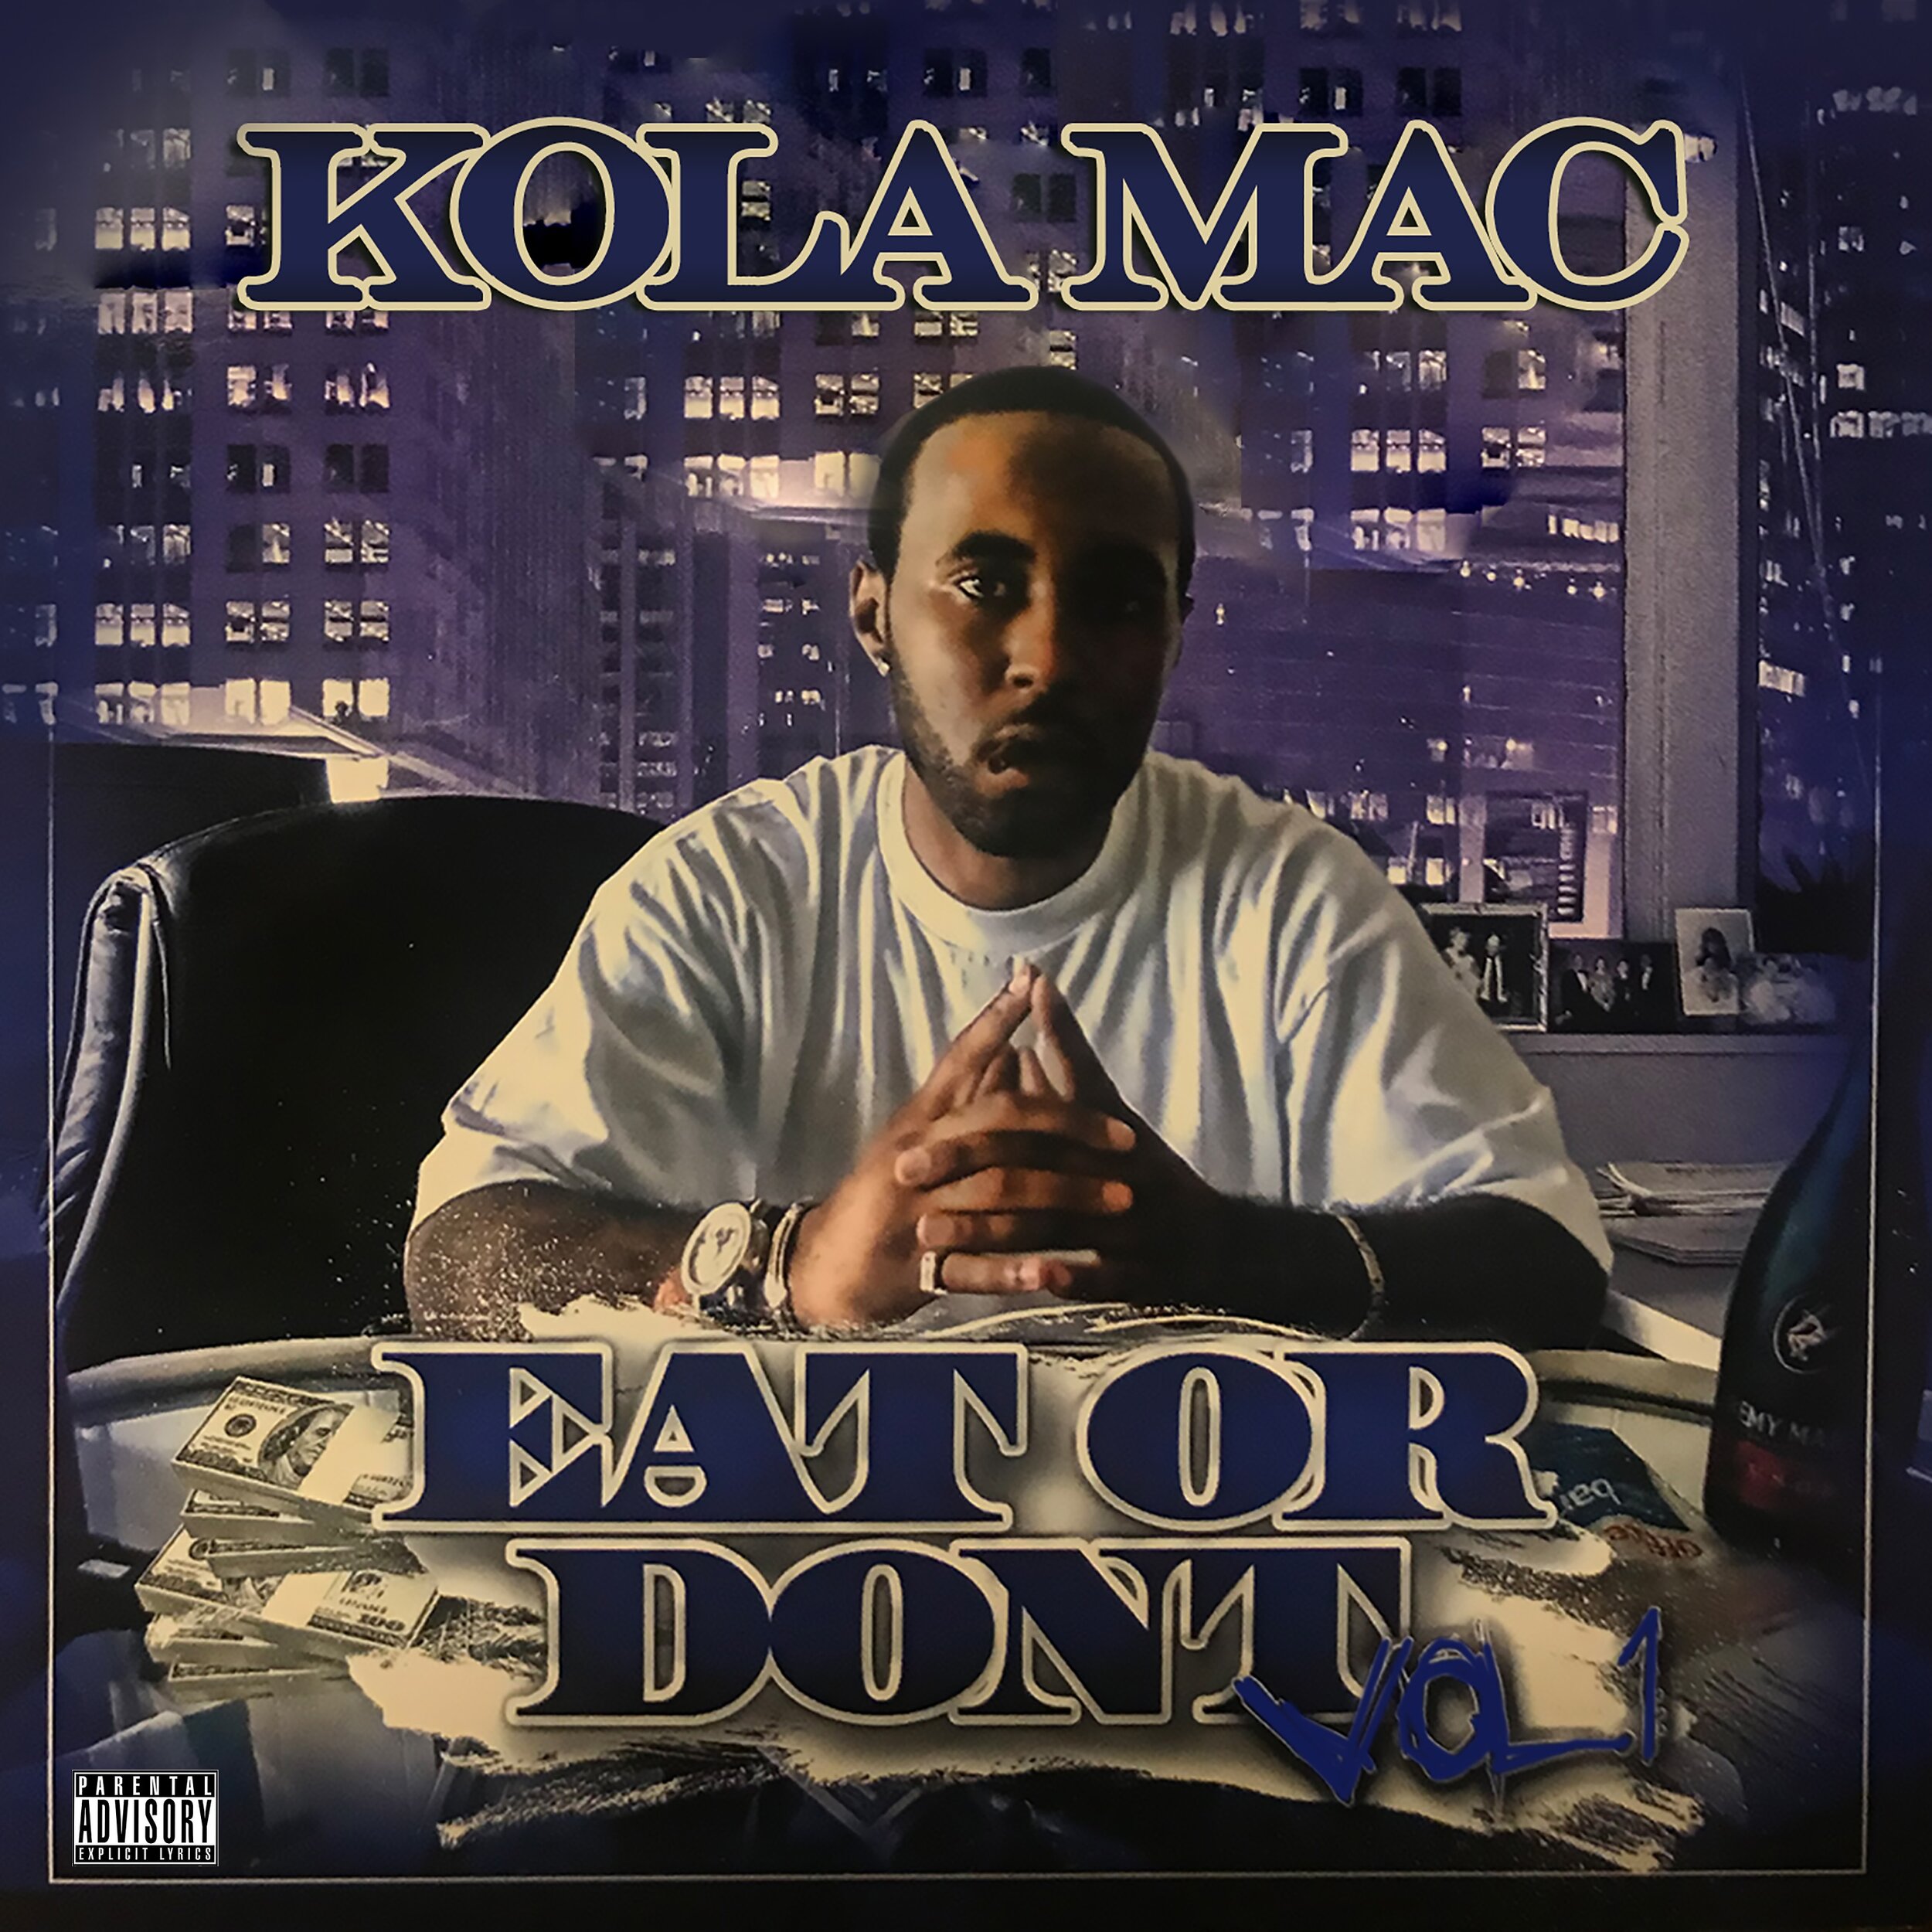 Kola Mac - Eat Or Die Vol 1 - Explicit Album Cover.jpg